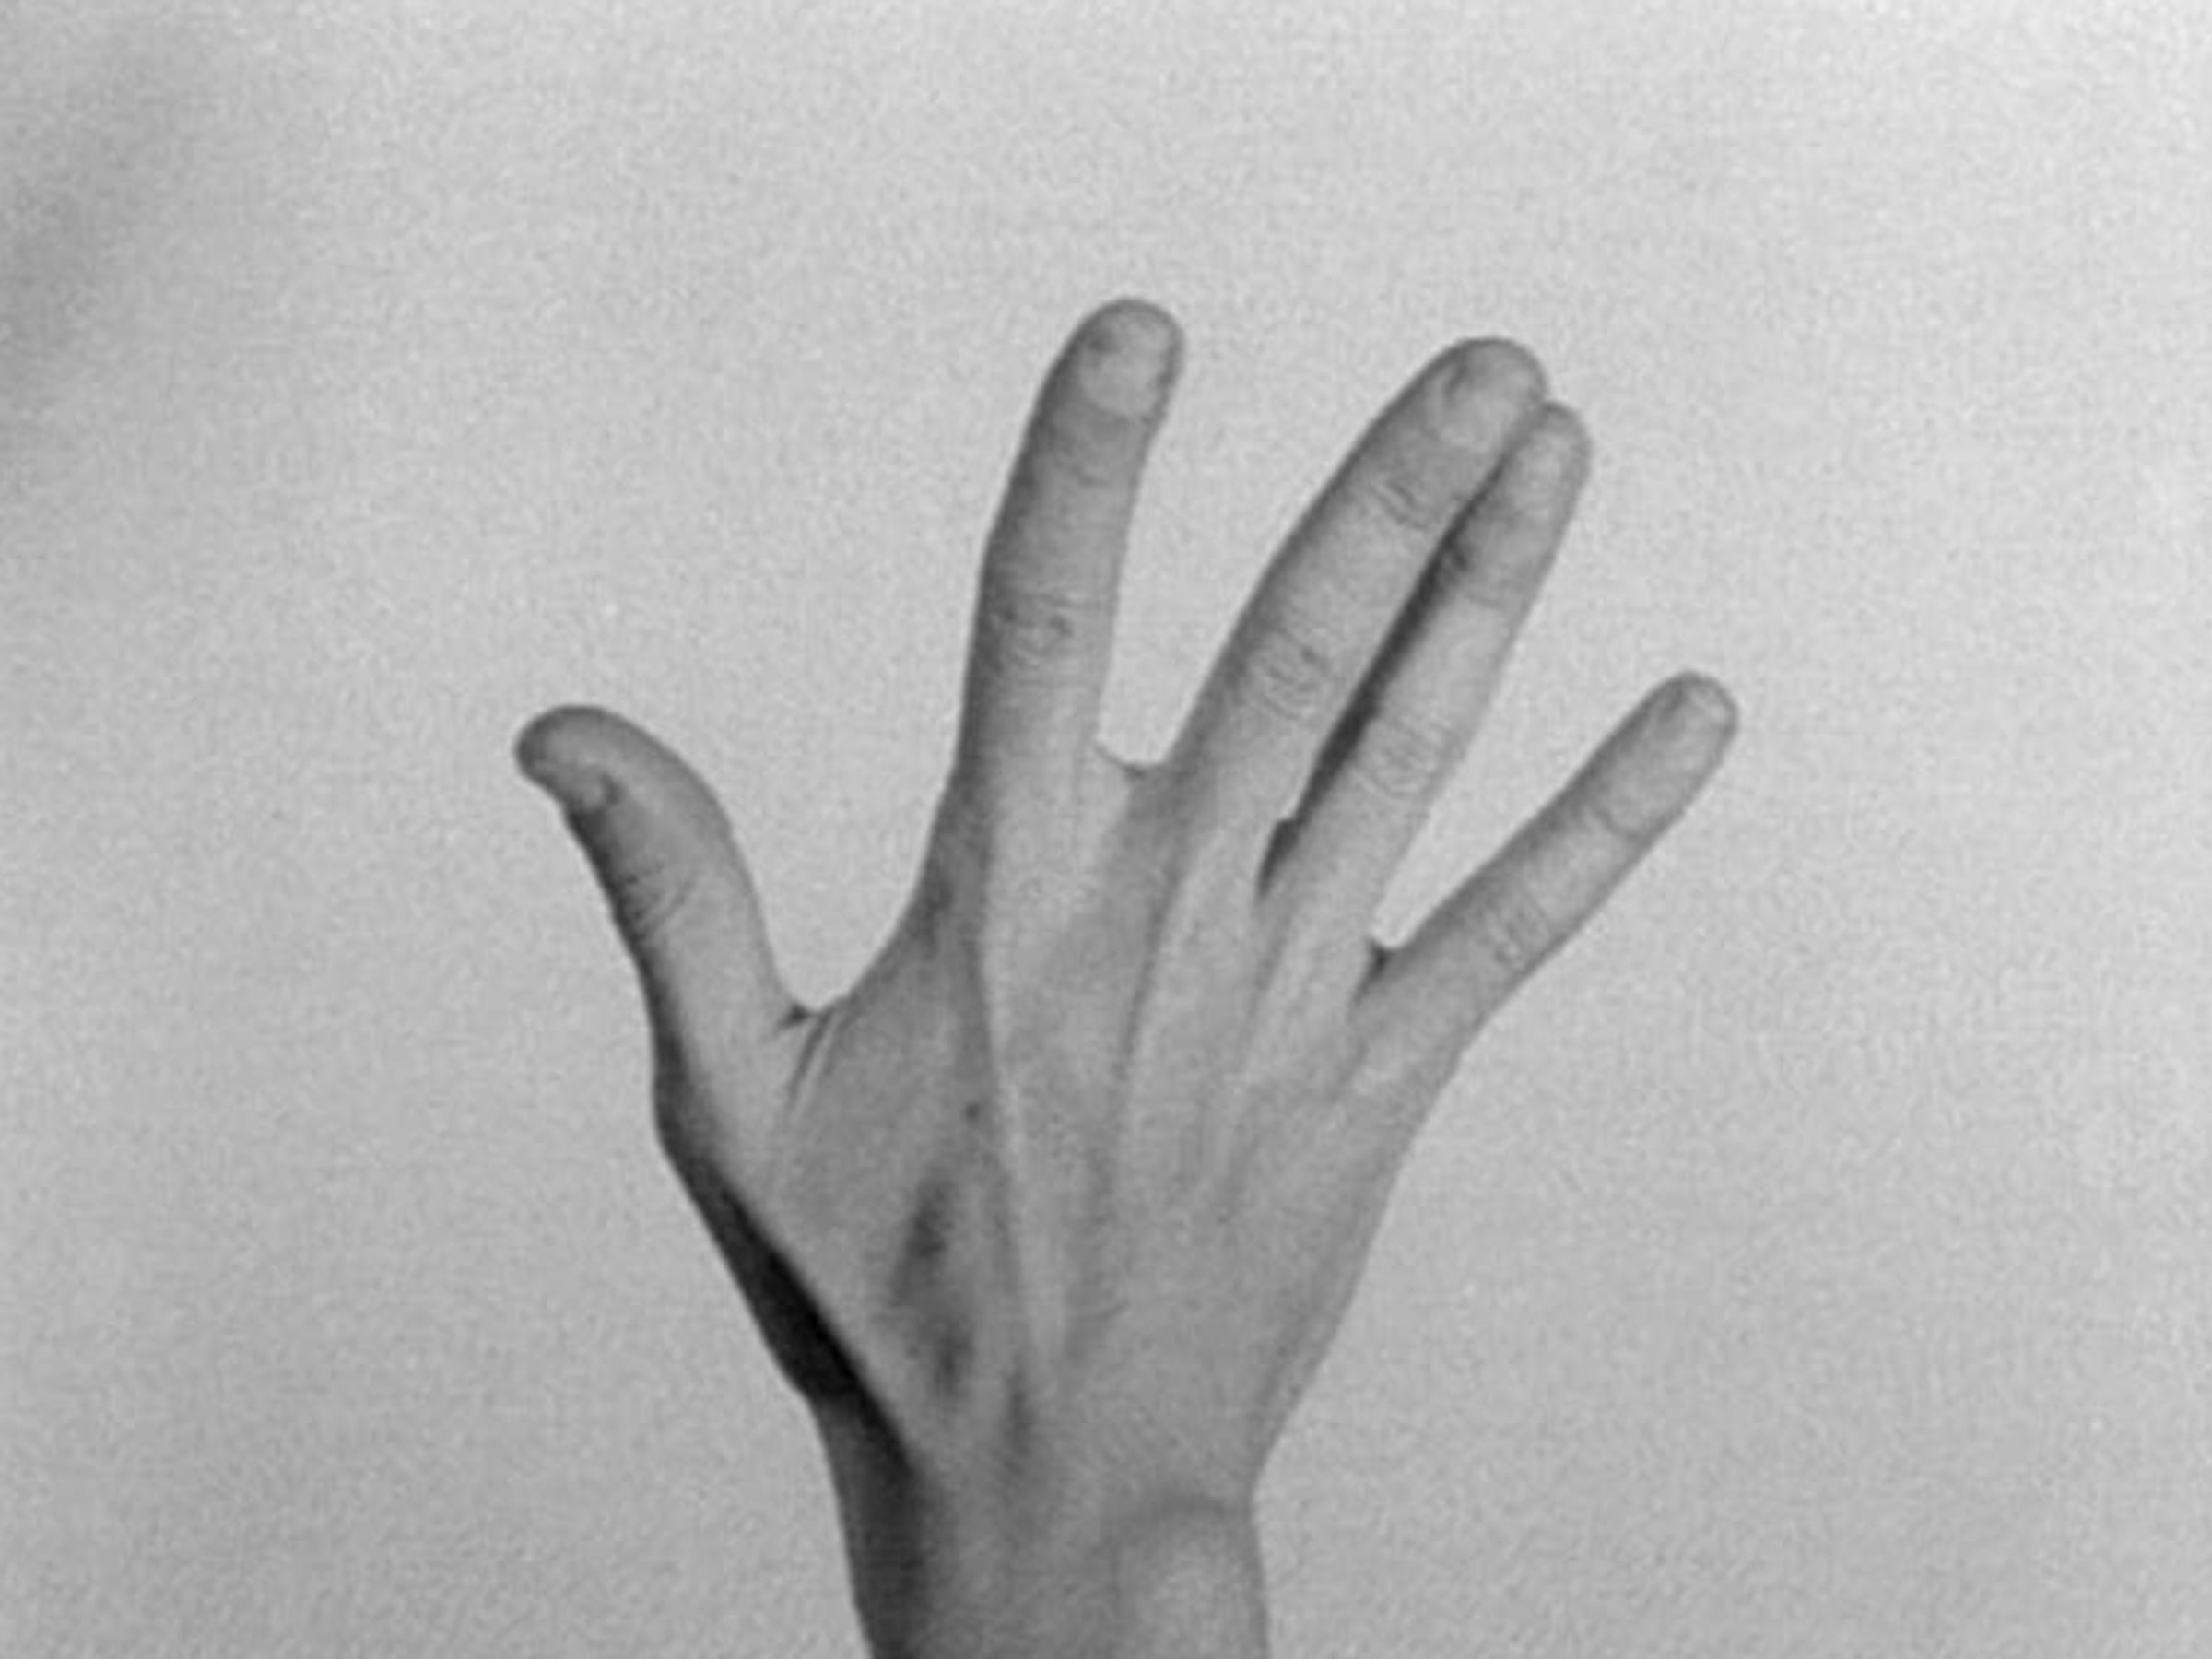 Yvonne Rainer, The Hand Movie, 1966. Avec l'aimable autorisation de l'artiste et de Mendes Wood DM.